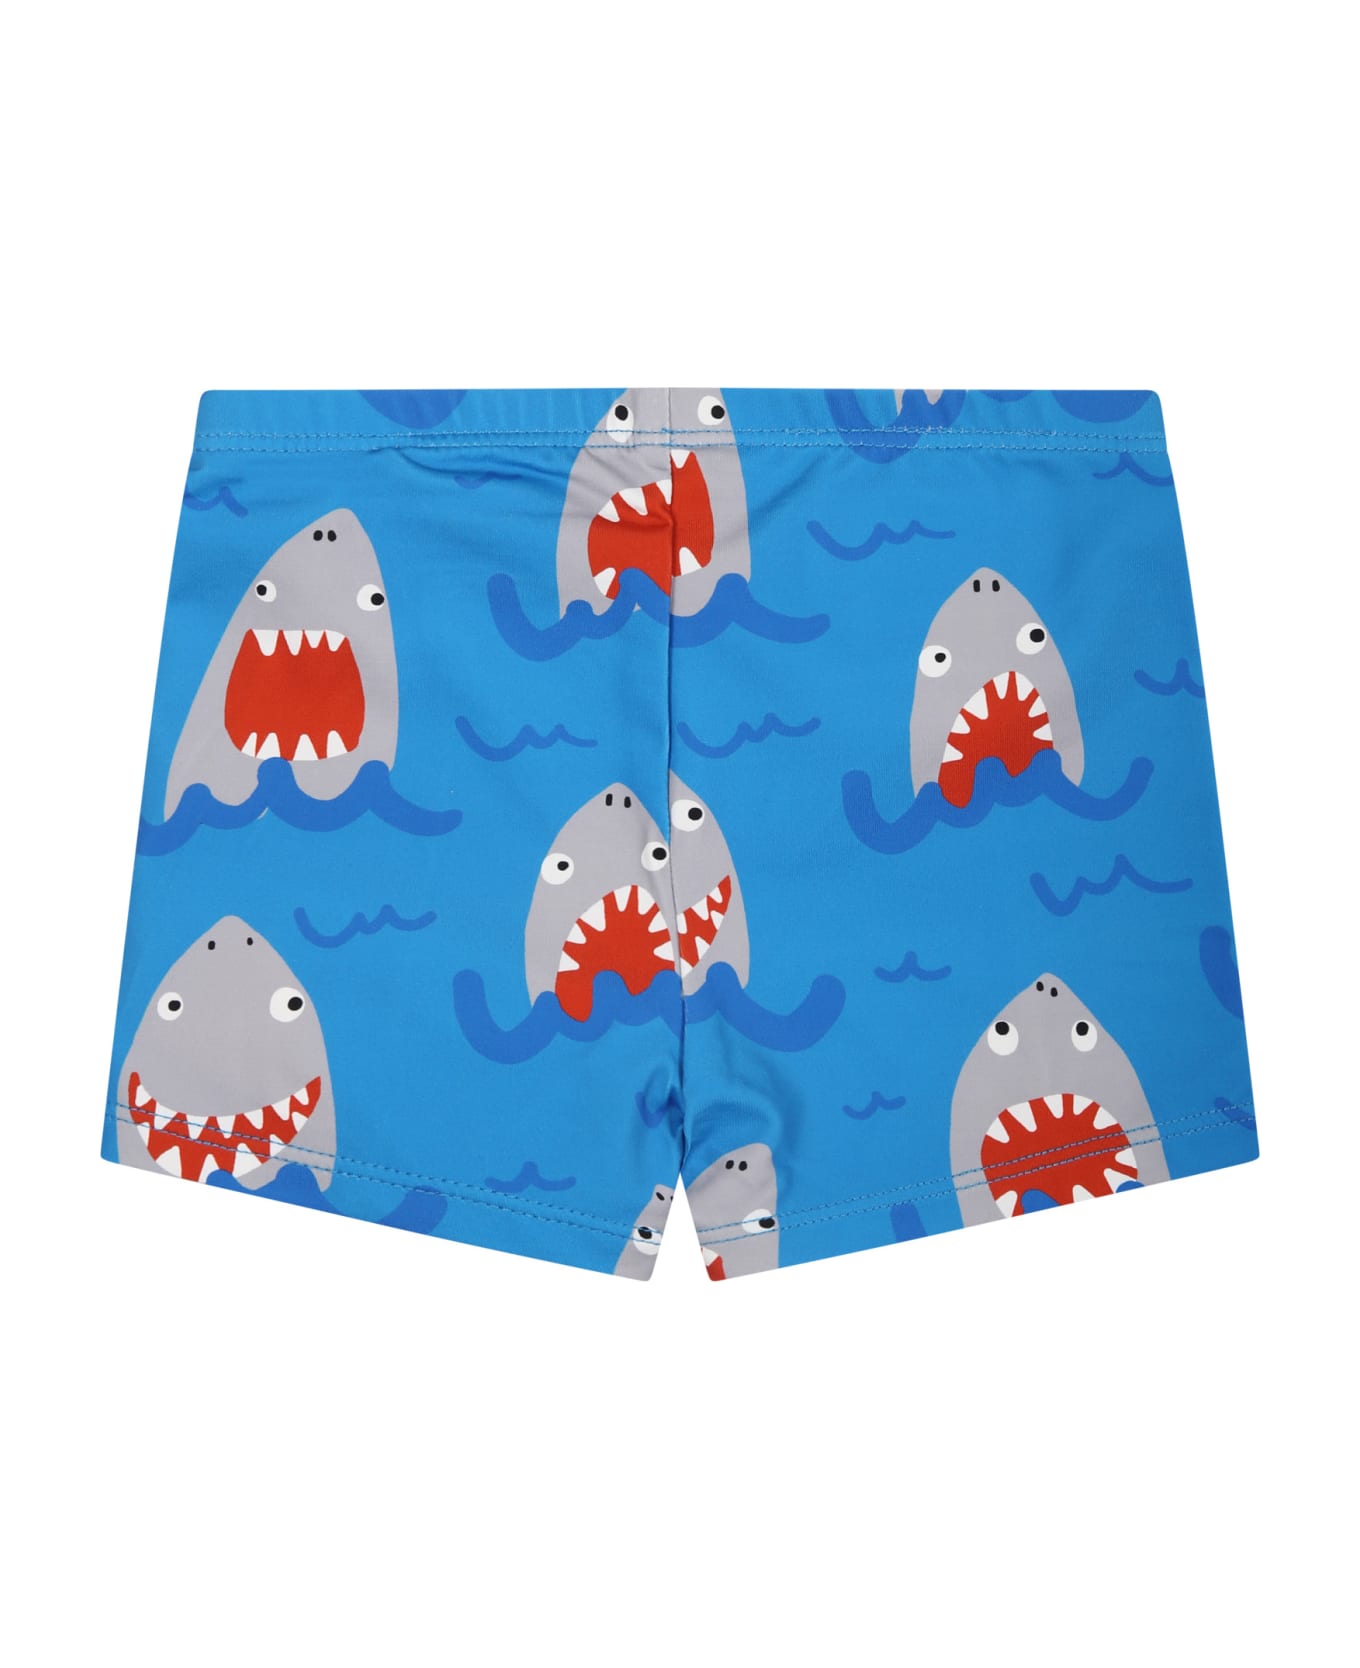 Stella cream McCartney Light Blue Boxer Shorts For Baby Boy With All-over Shark Print - Celeste